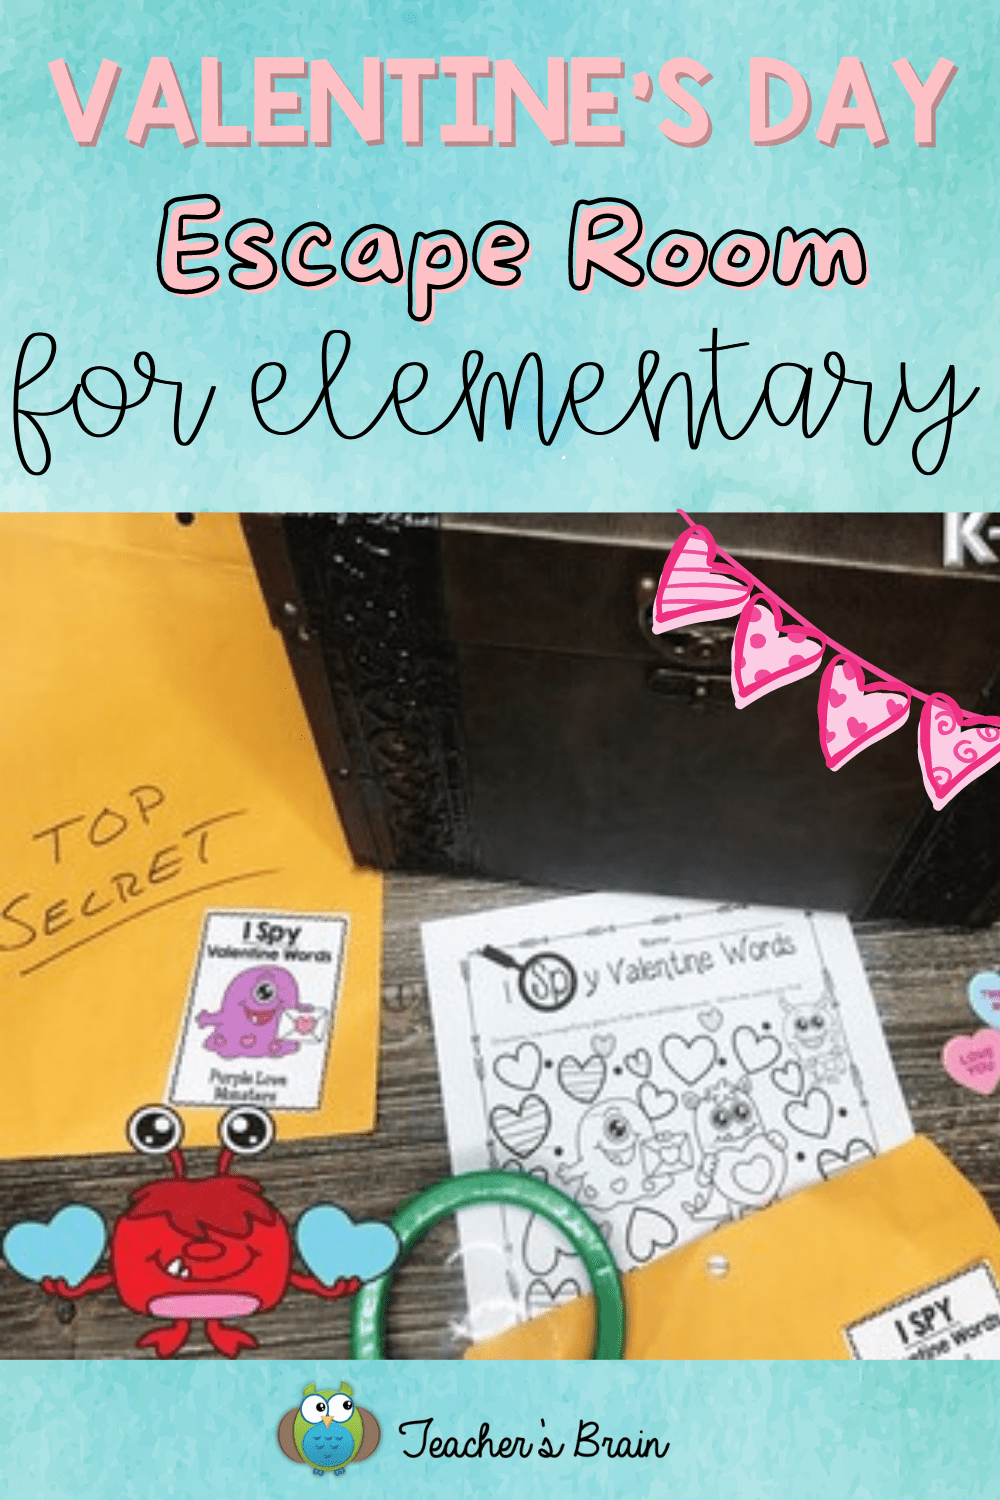 Valentine's Day escape room